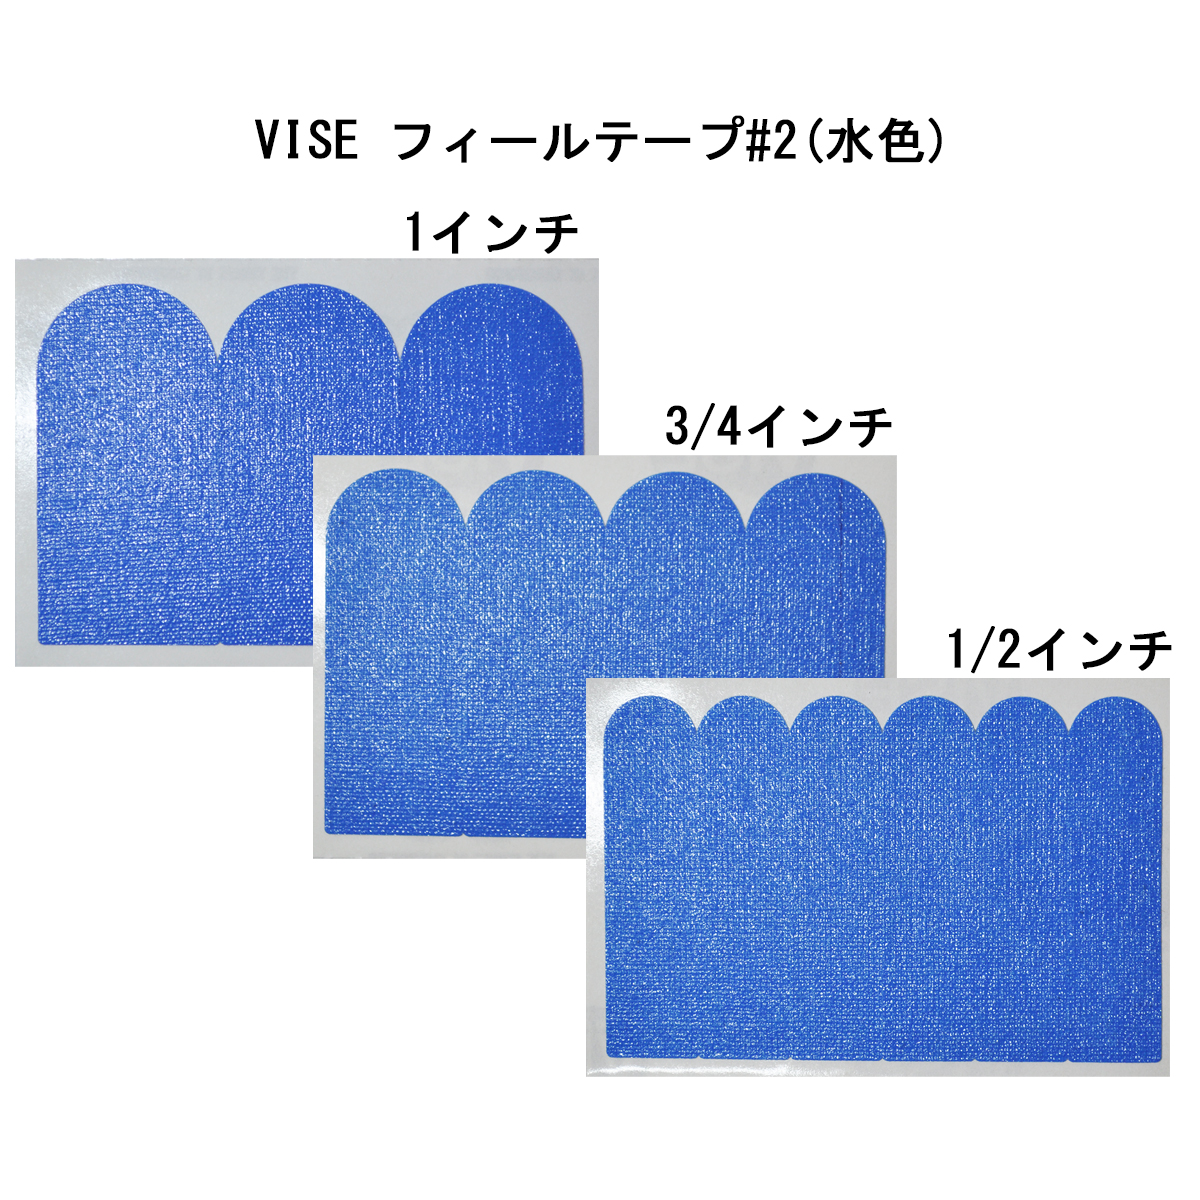 【12袋セット】VISE フィールテープ#2(水色)